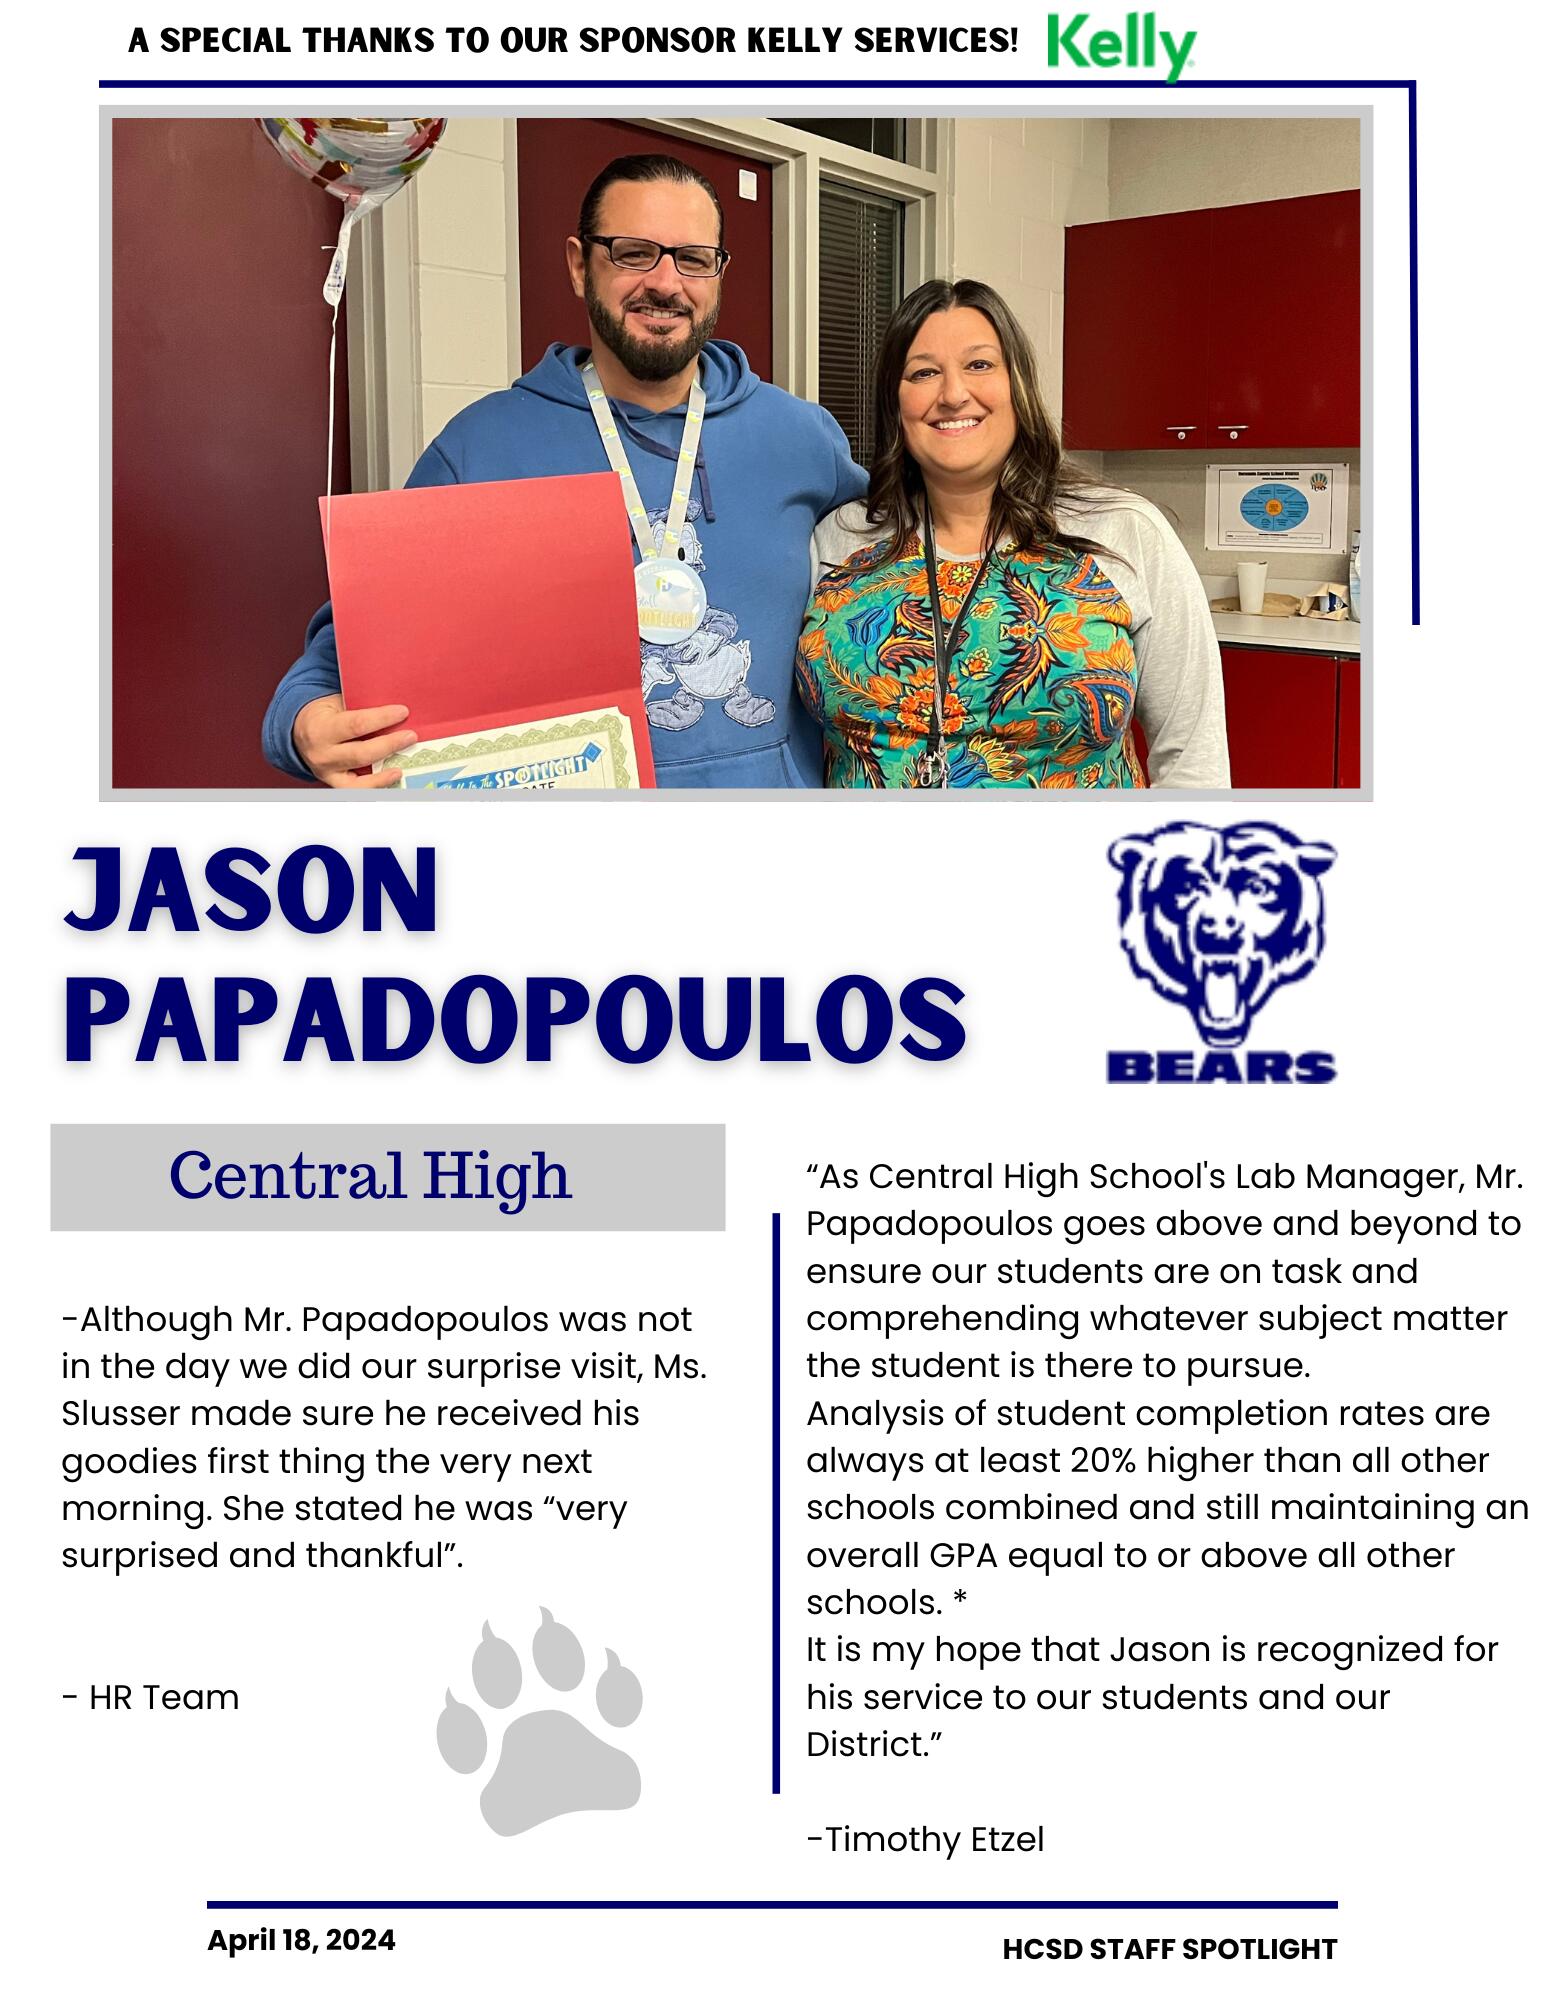 Staff Spotlight on Jason Papadopoulos